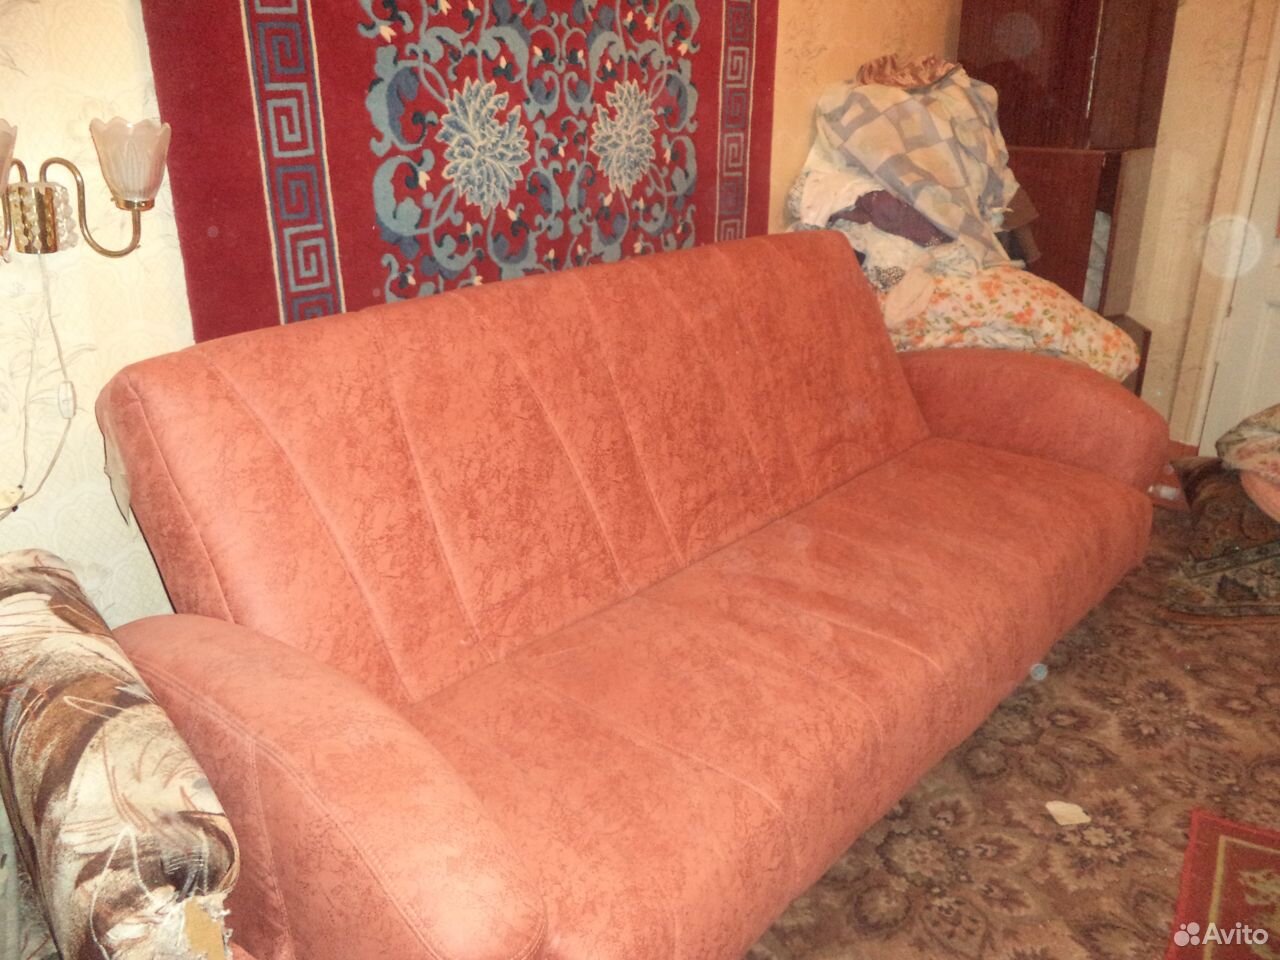  Диван (диван- кровать) новый  89675090961 купить 1